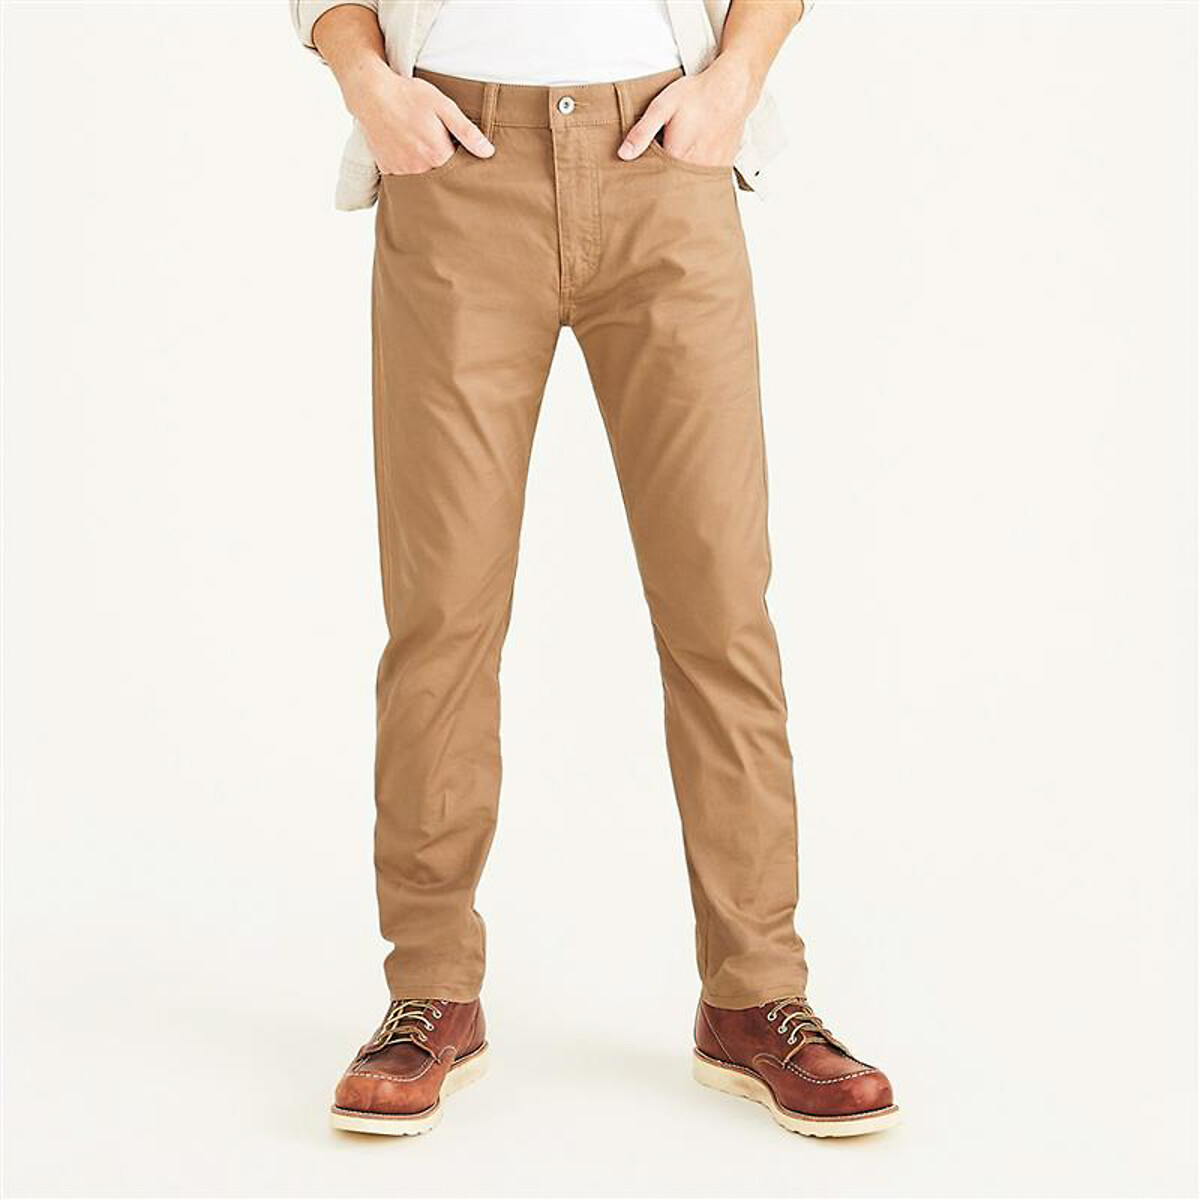 Dockers Men's Slim Fit Jean Cut All Seasons Tech Pants | eBay